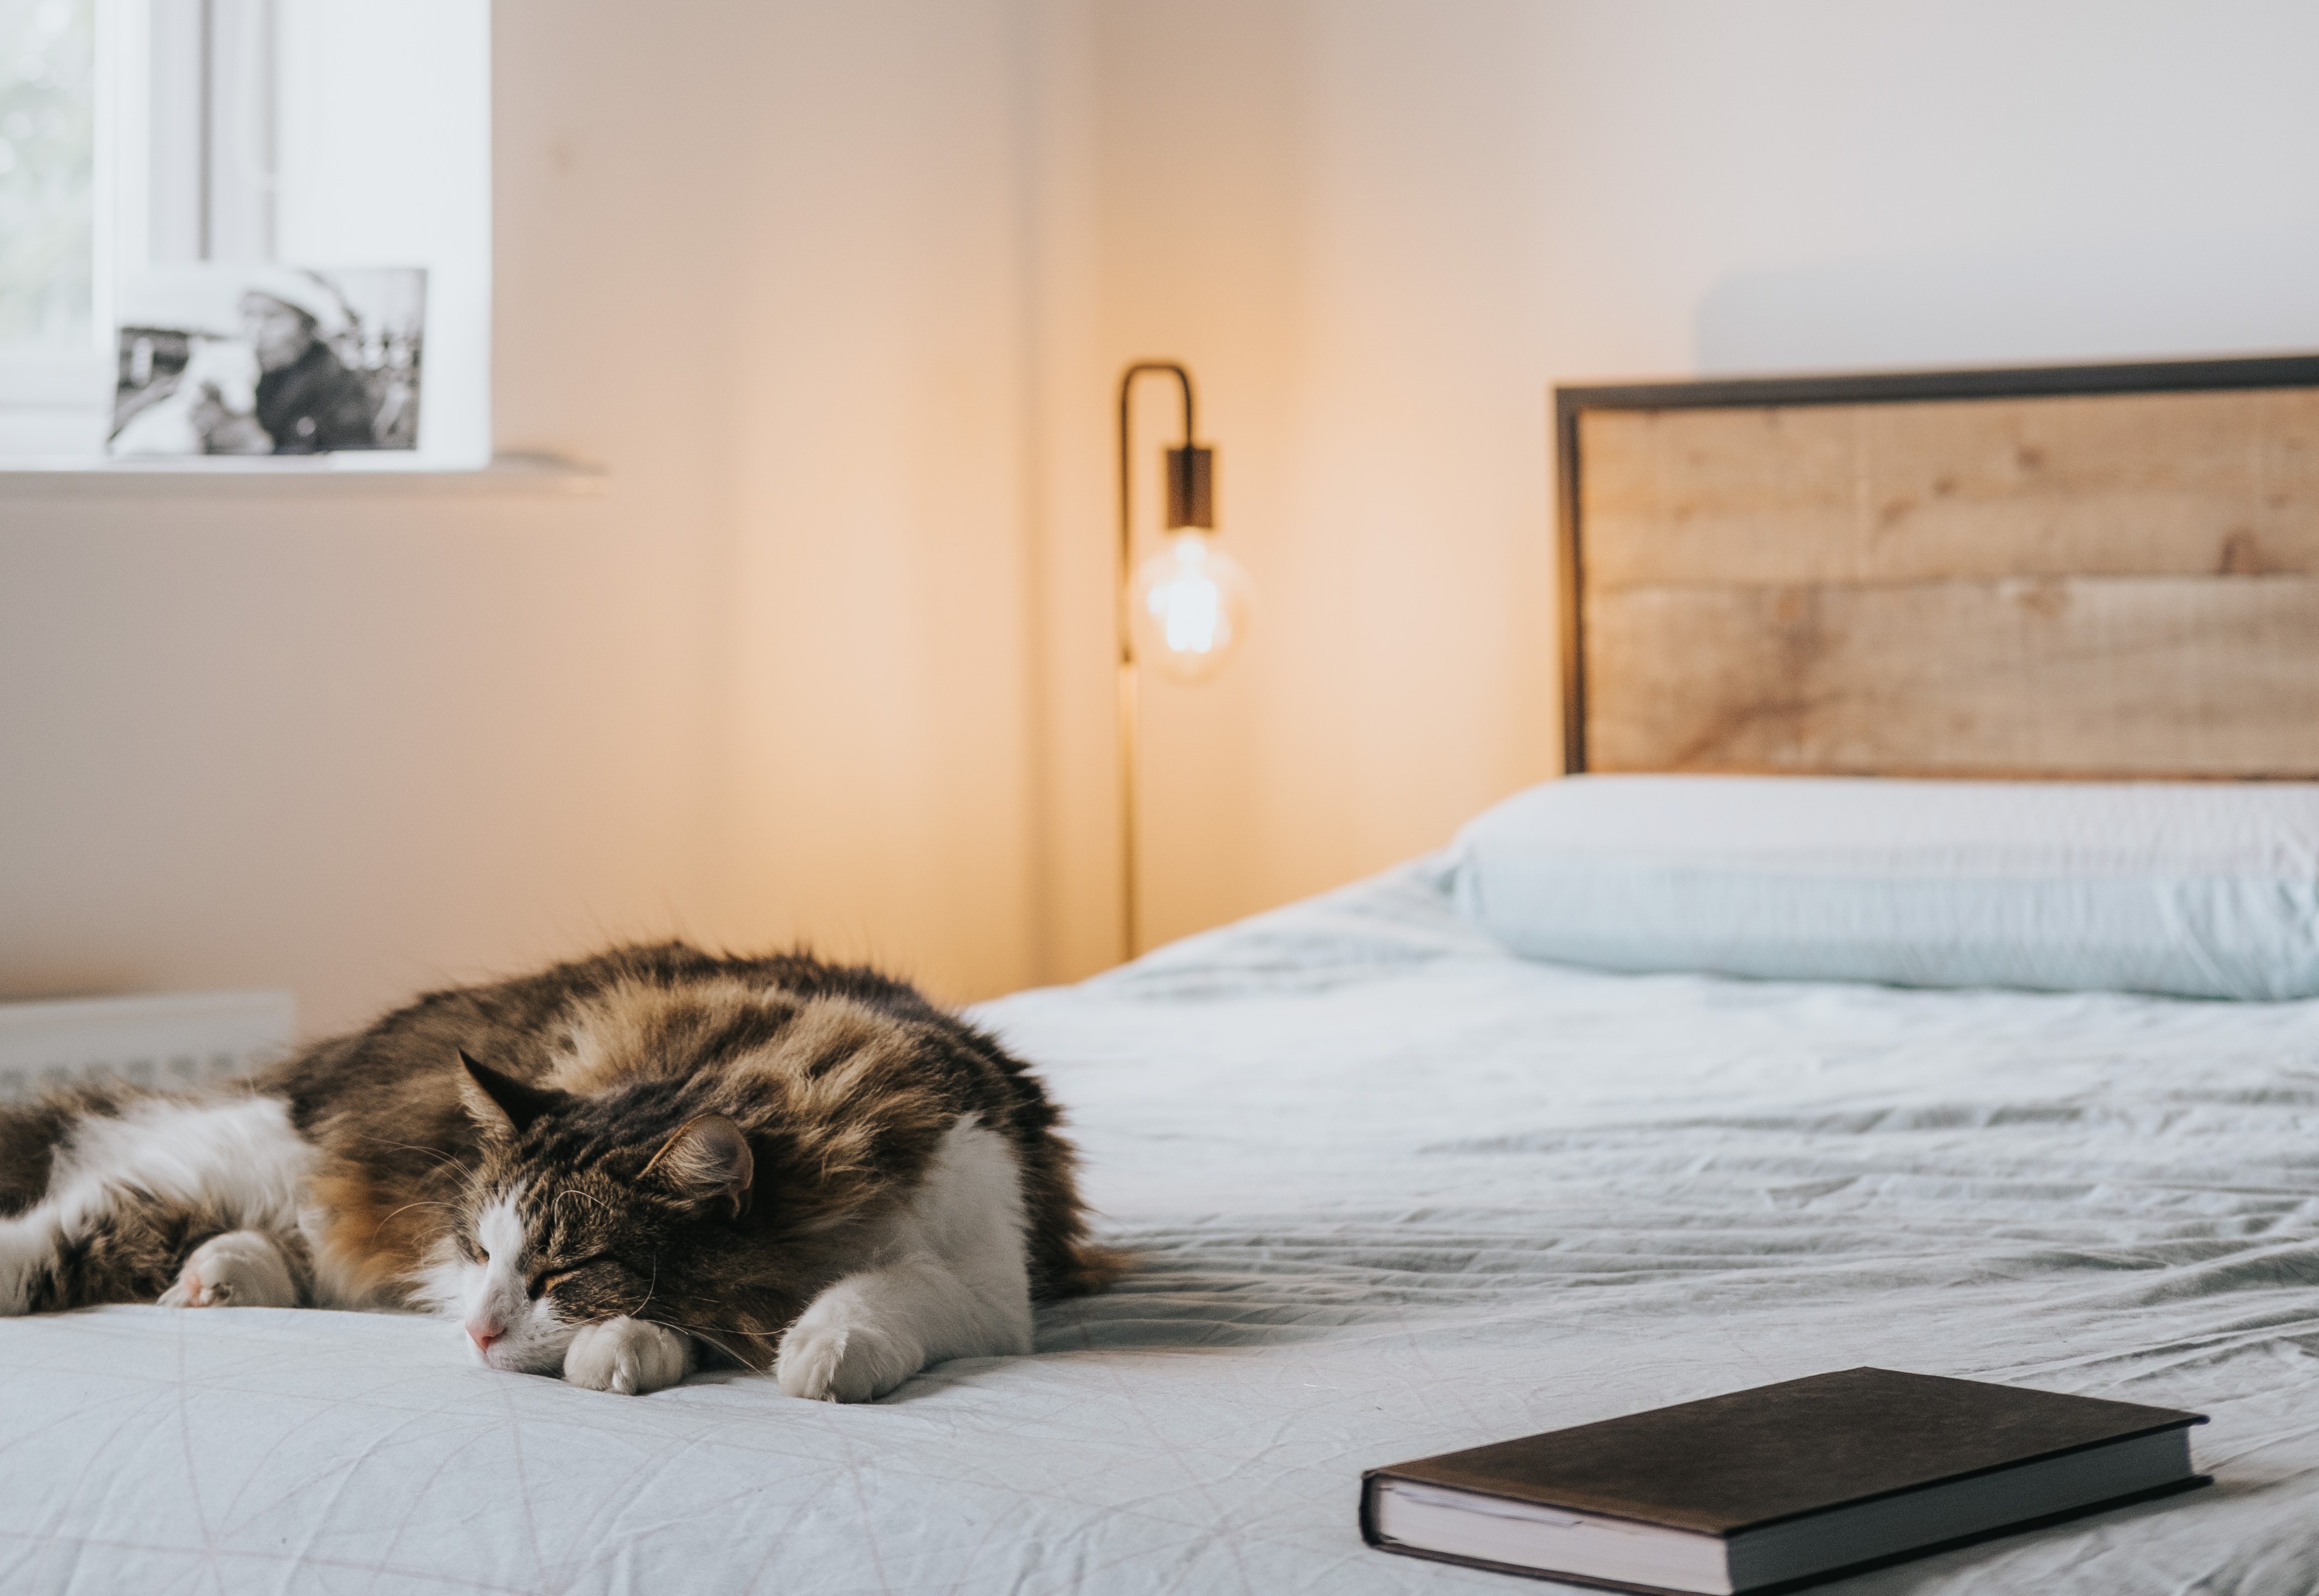 Kat slaapt op bed naast boek en het nachtlampje brandt